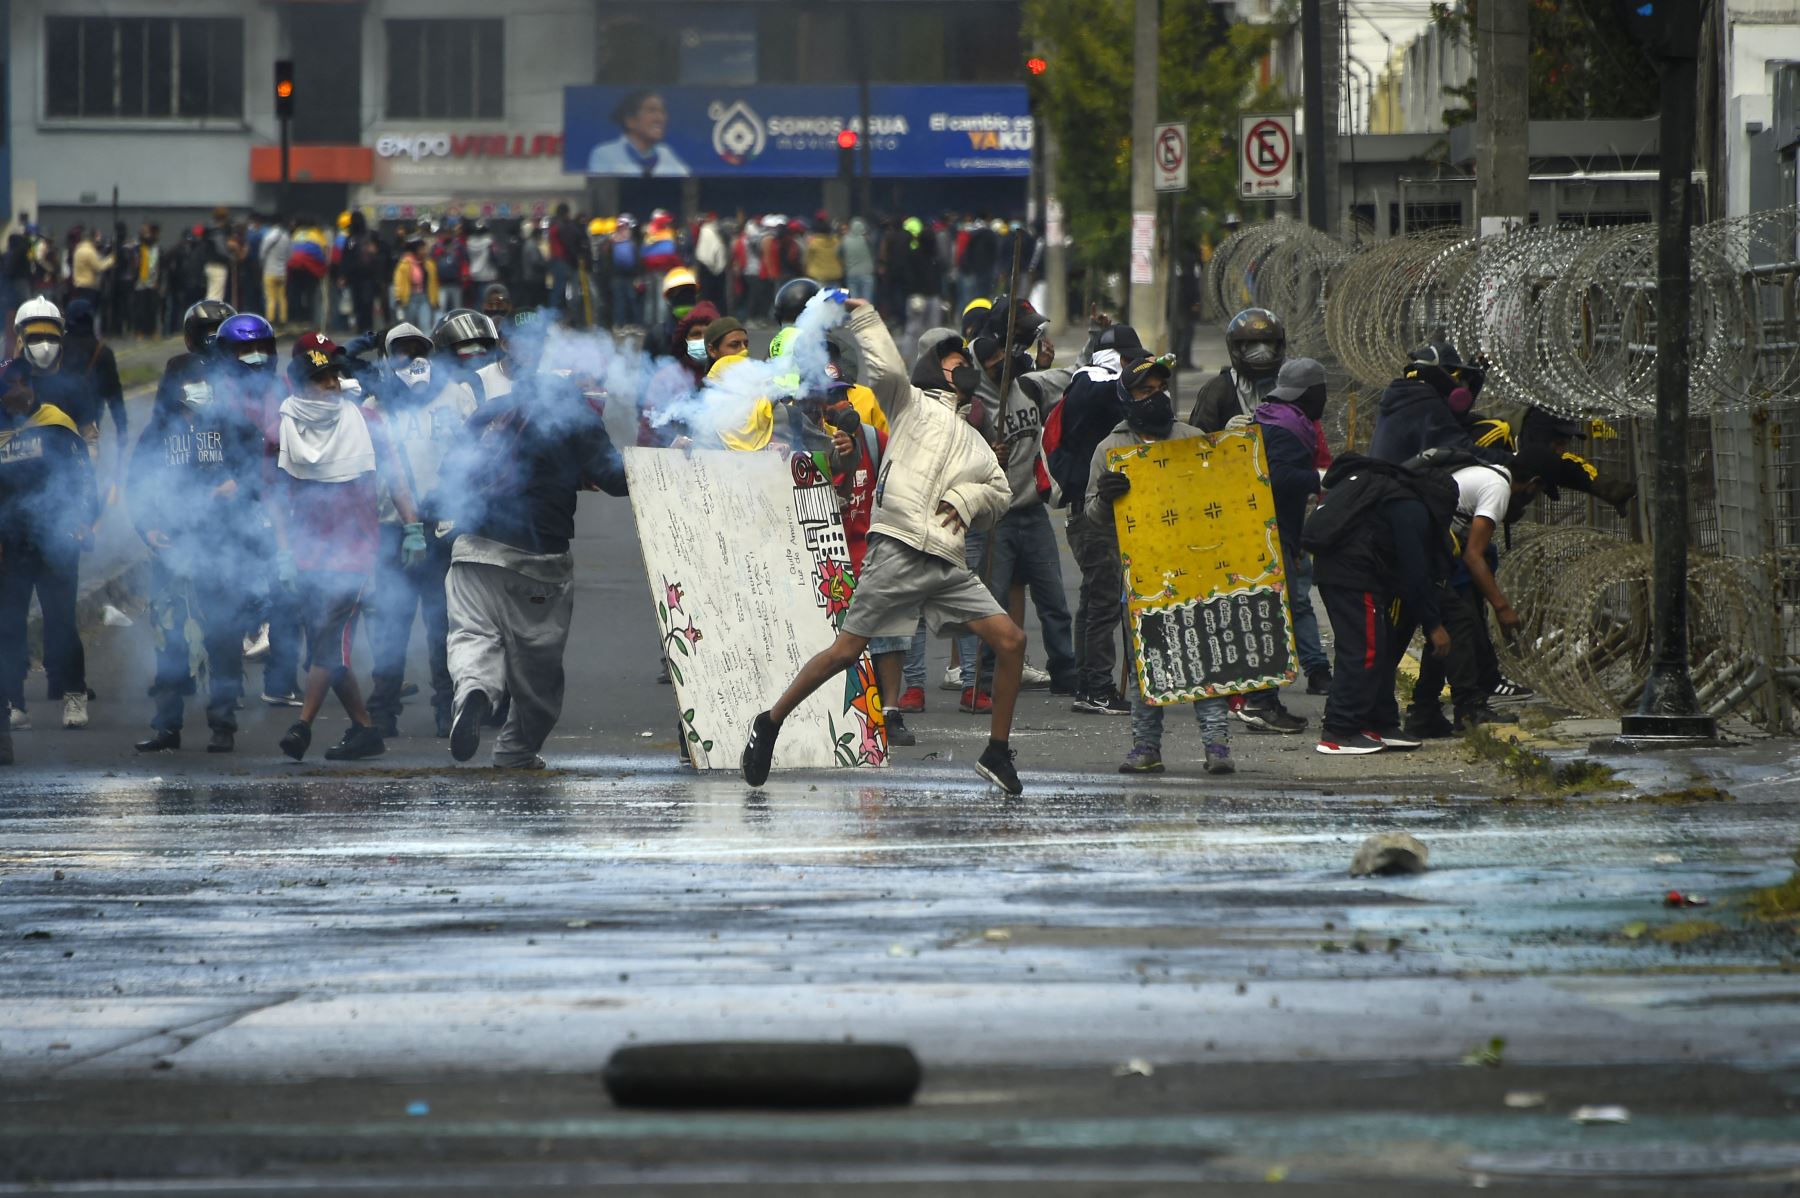 Manifestantes chocan con la policía en Quito el 23 de junio de 2022, en el marco de protestas lideradas por indígenas contra el gobierno. Indígenas ecuatorianos han llegado a la capital Quito desde todo el país en los últimos días para unirse a las protestas contra los altos precios del combustible y el costo de vida.
Foto: AFP